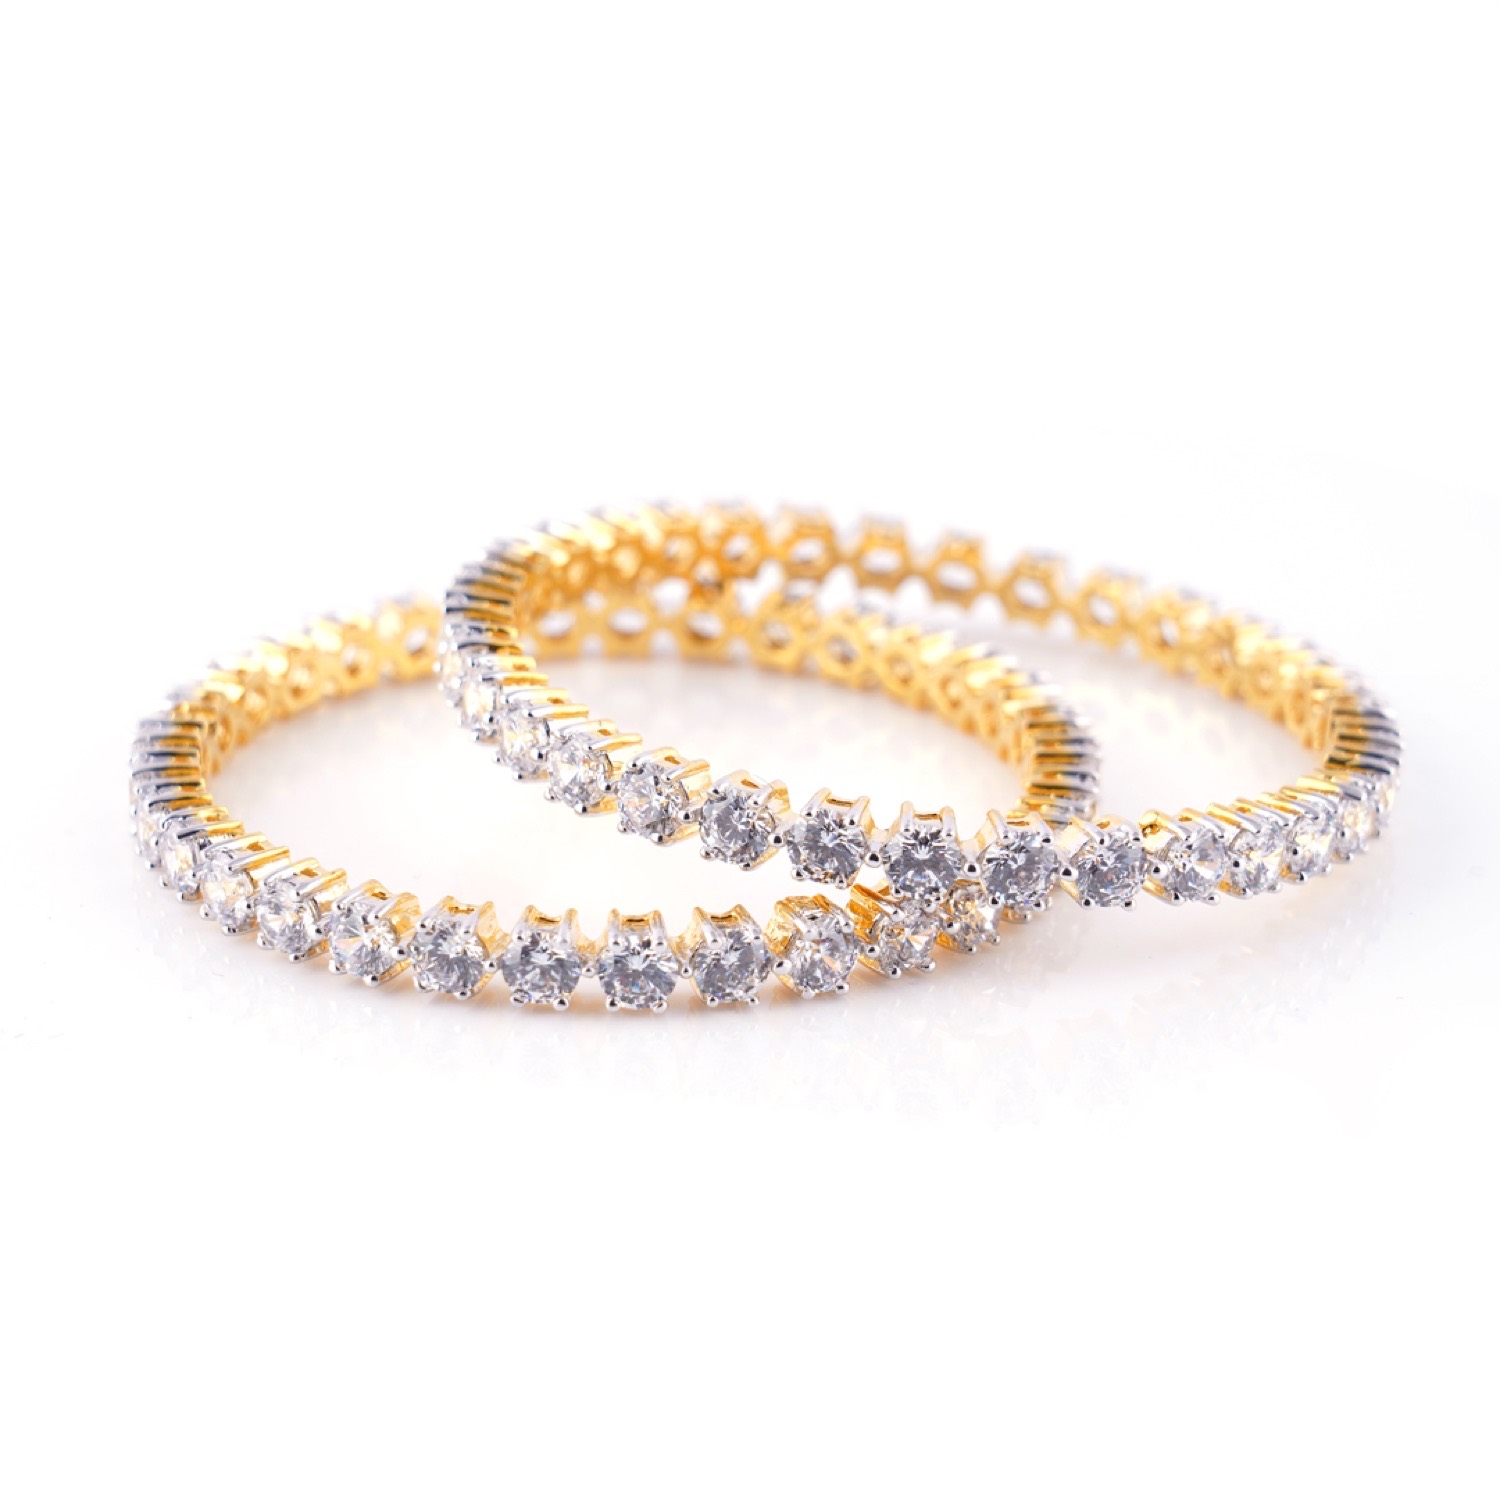 varam_bracelet_and_bangle_single_lined_white_stone_gold_coated_silver_bangle-1